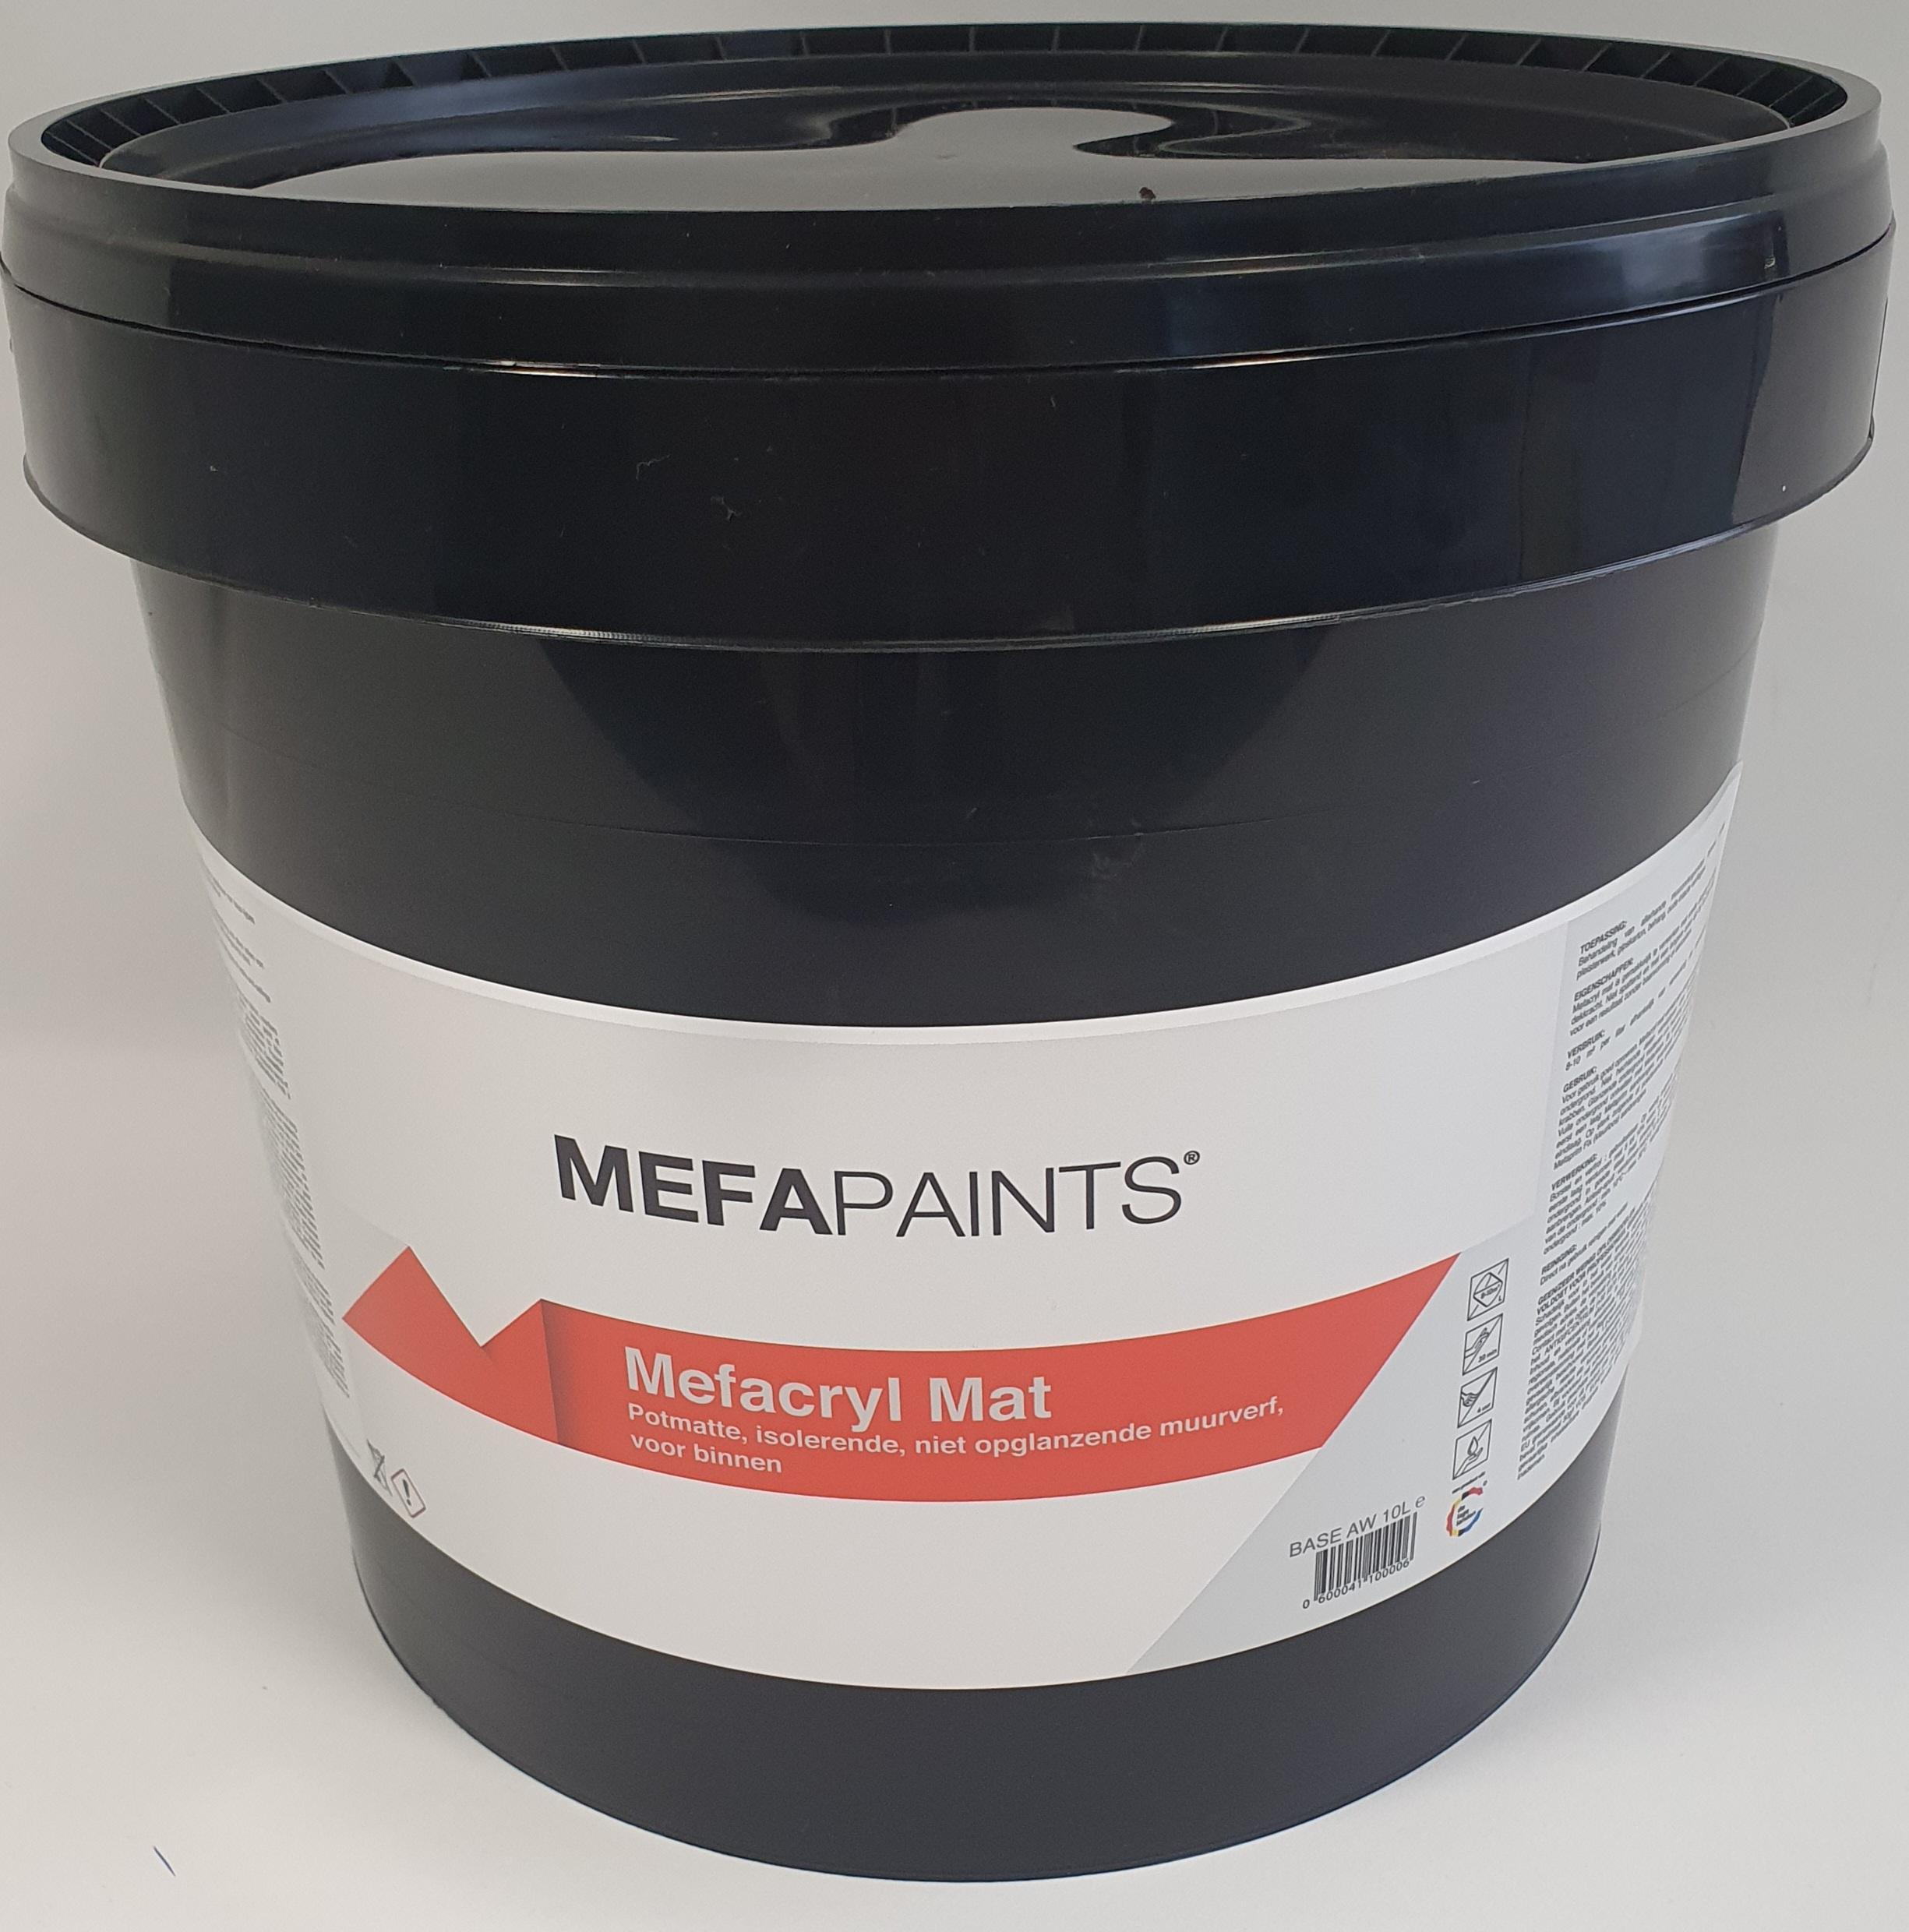 Mefapaints Mefacryl Mat